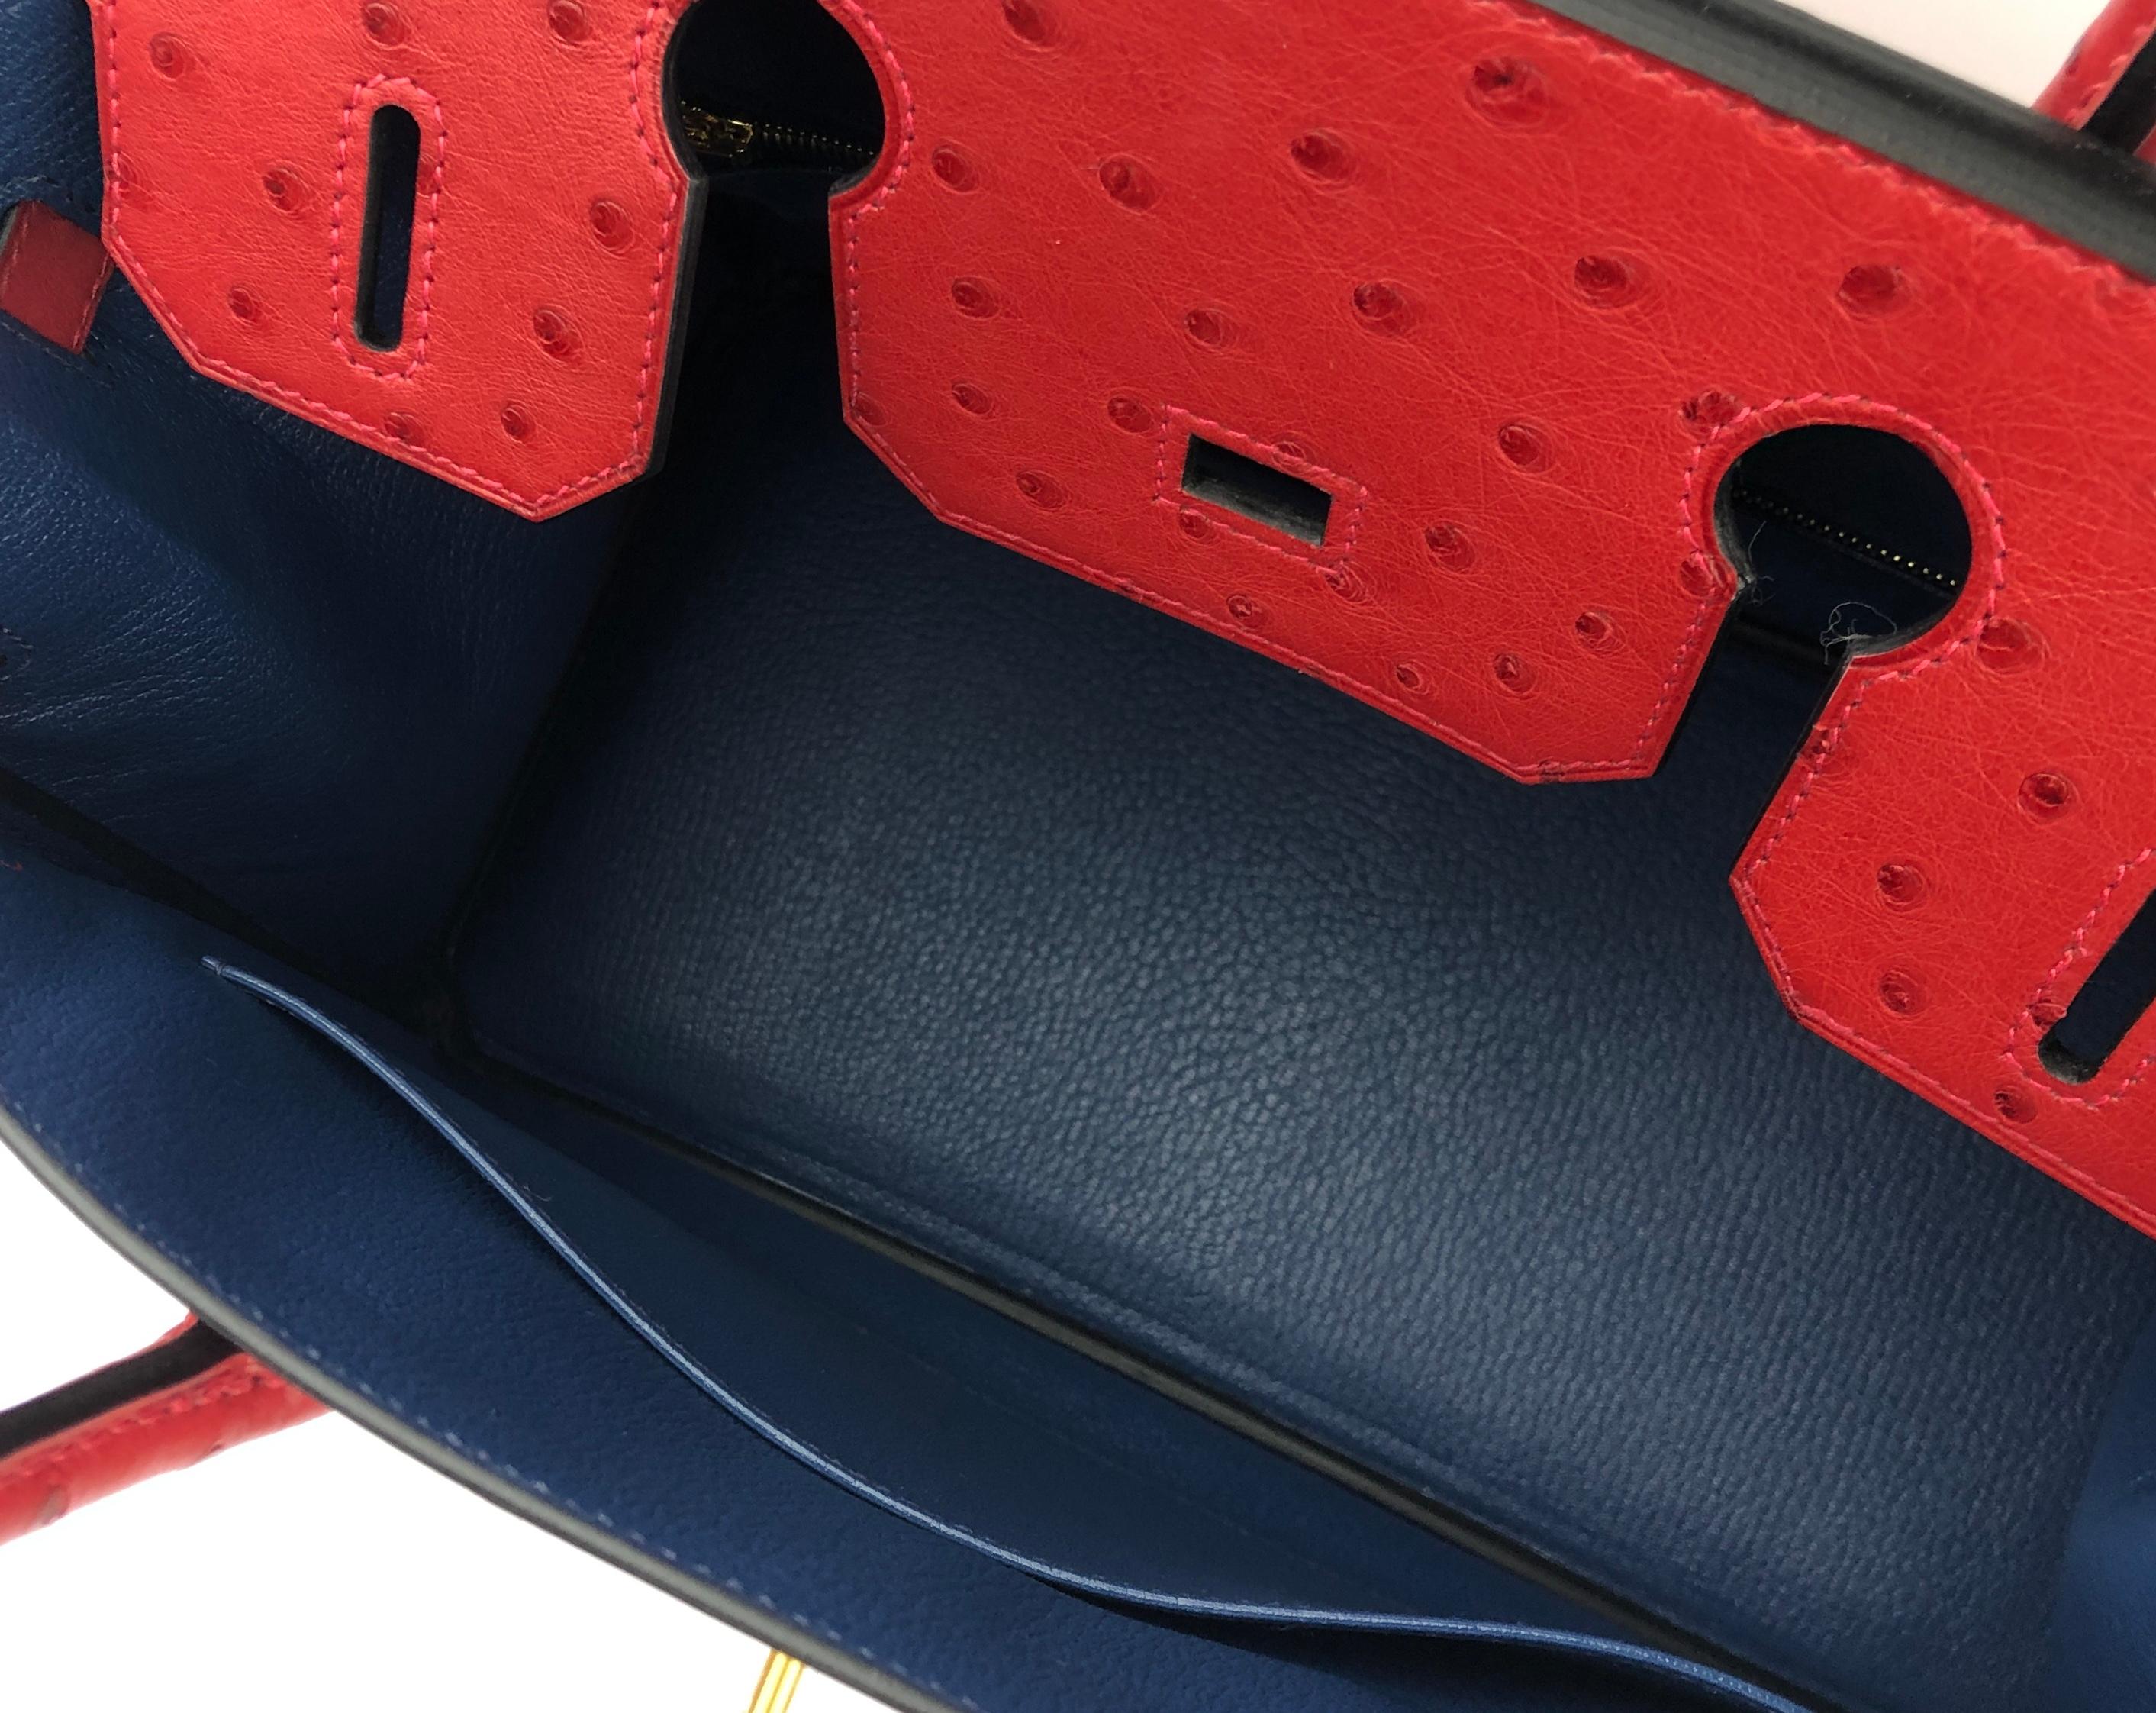 Hermès - Sac Birkin 30  Commande spéciale d'autruche rouge vif, saphir rouge et bleu brossé 3